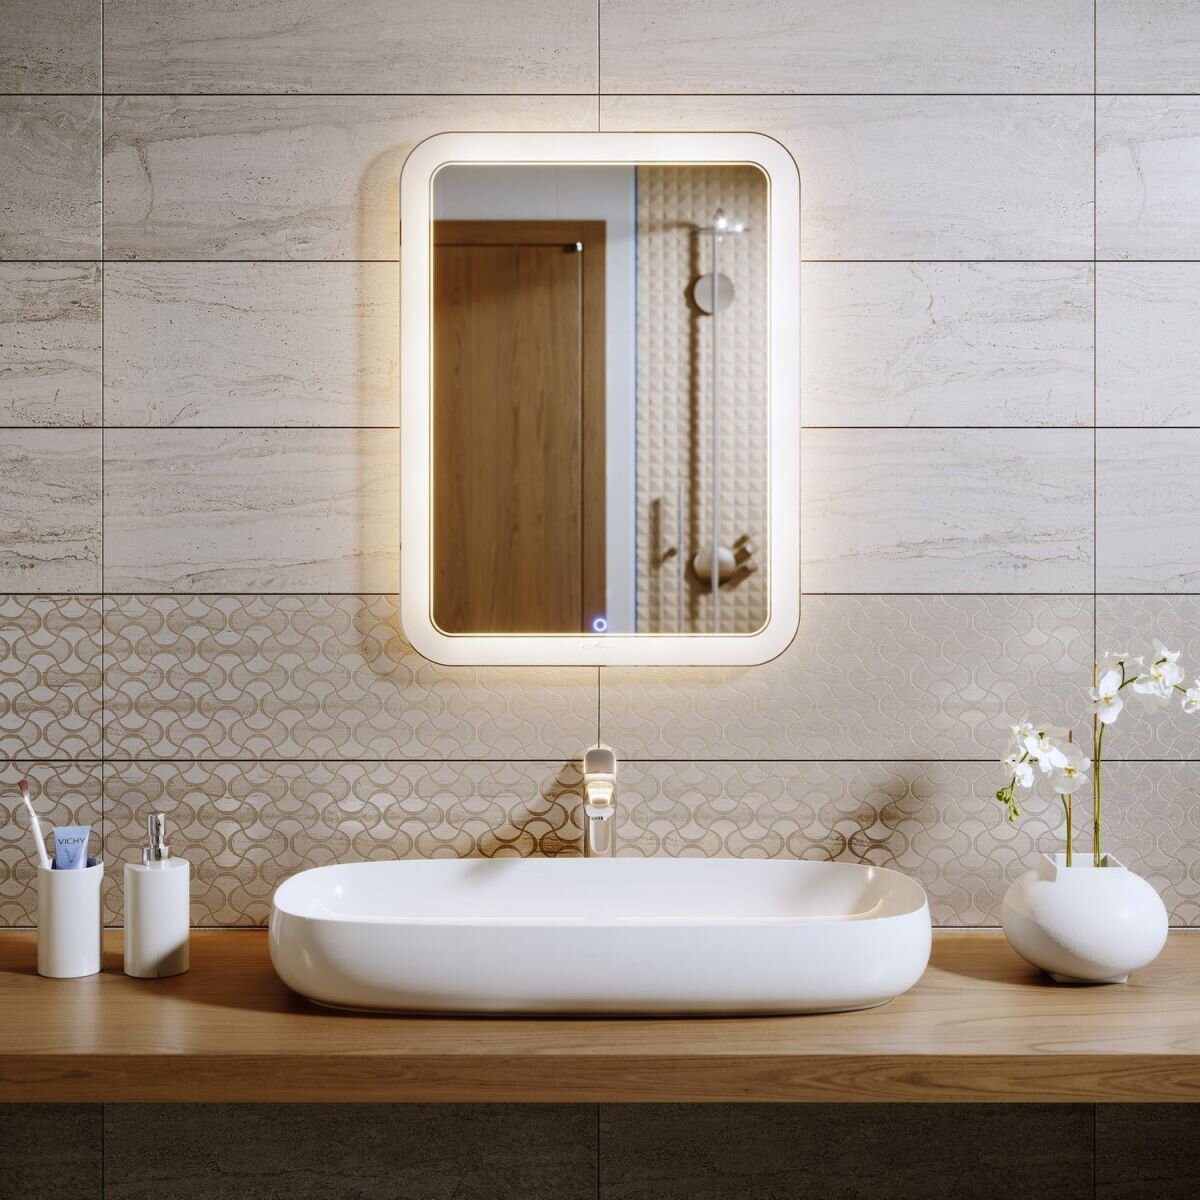 Незапотевающие зеркала для ванной с подогревом и подсветкой